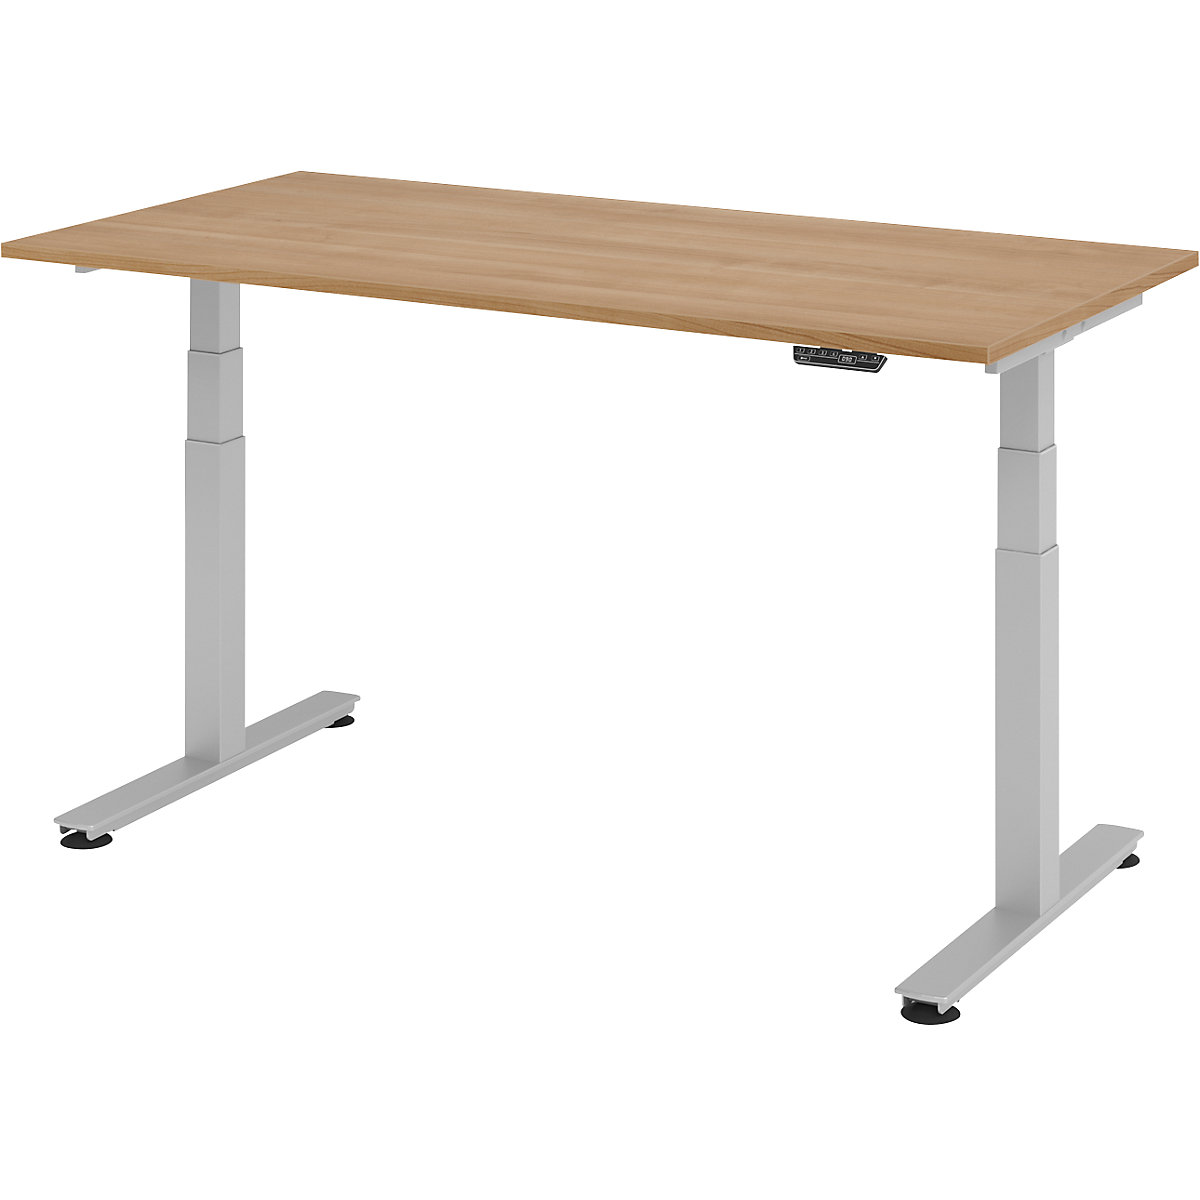 Psací stůl pro práci vestoje, s elektrickým přestavováním výšky UPLINER-2.0, podstavec s nohami ve tvaru T, šířka 1200 mm, ořechový dekor-22